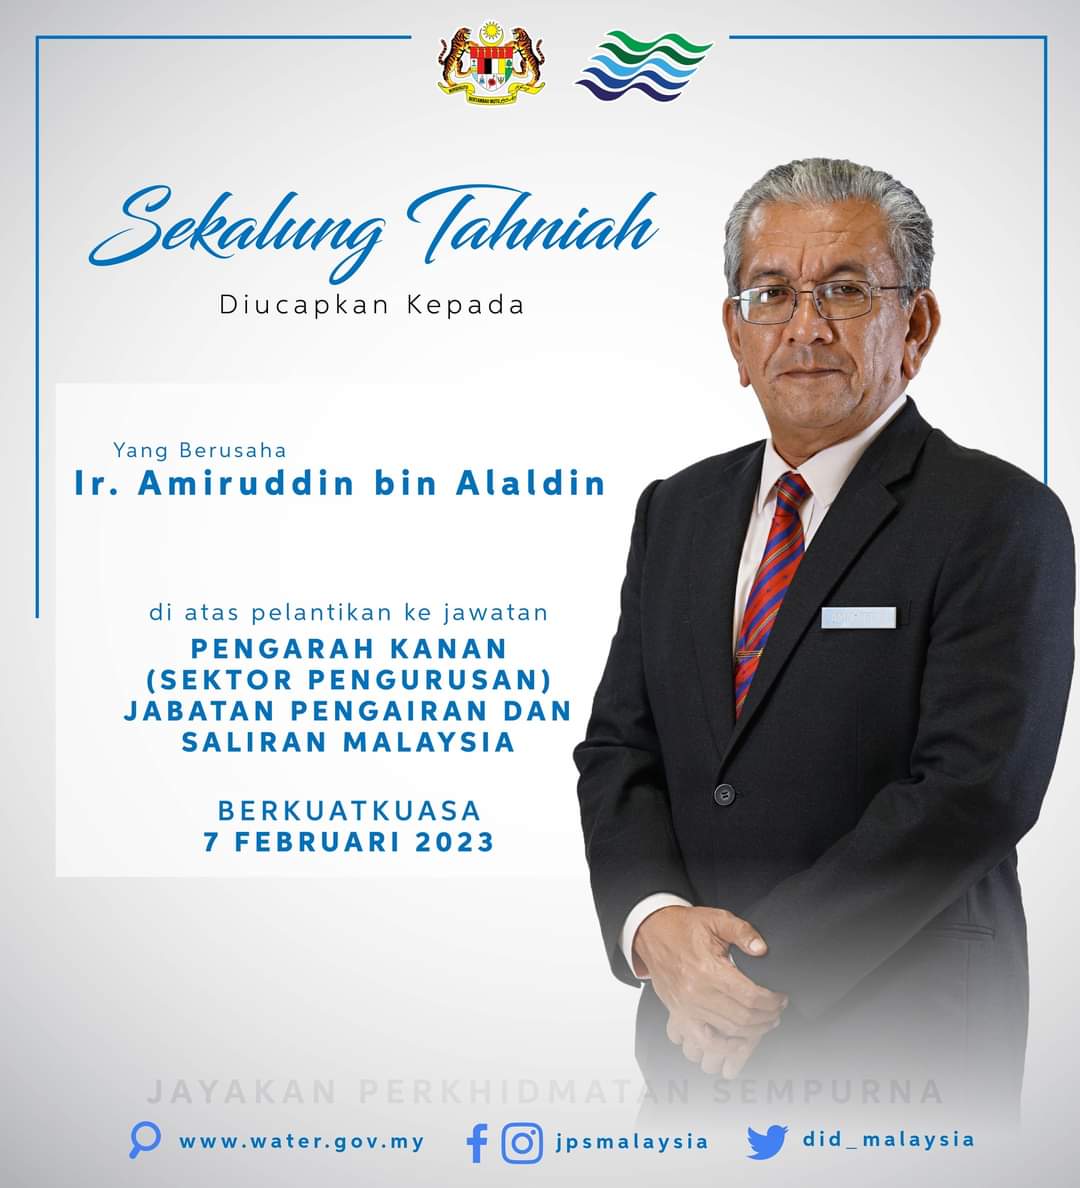 Sekalung Tahniah diucapkan kepada Ir. Amiruddin bin Alaldin atas pelantikan ke jawatan Pengarah Kanan (Sektor Pengurusan) Jabatan Pengairan & Saliran Malaysia berkuatkuasa pada 7 Februari 2023.

#JayakanPerkhidmatanSempurna